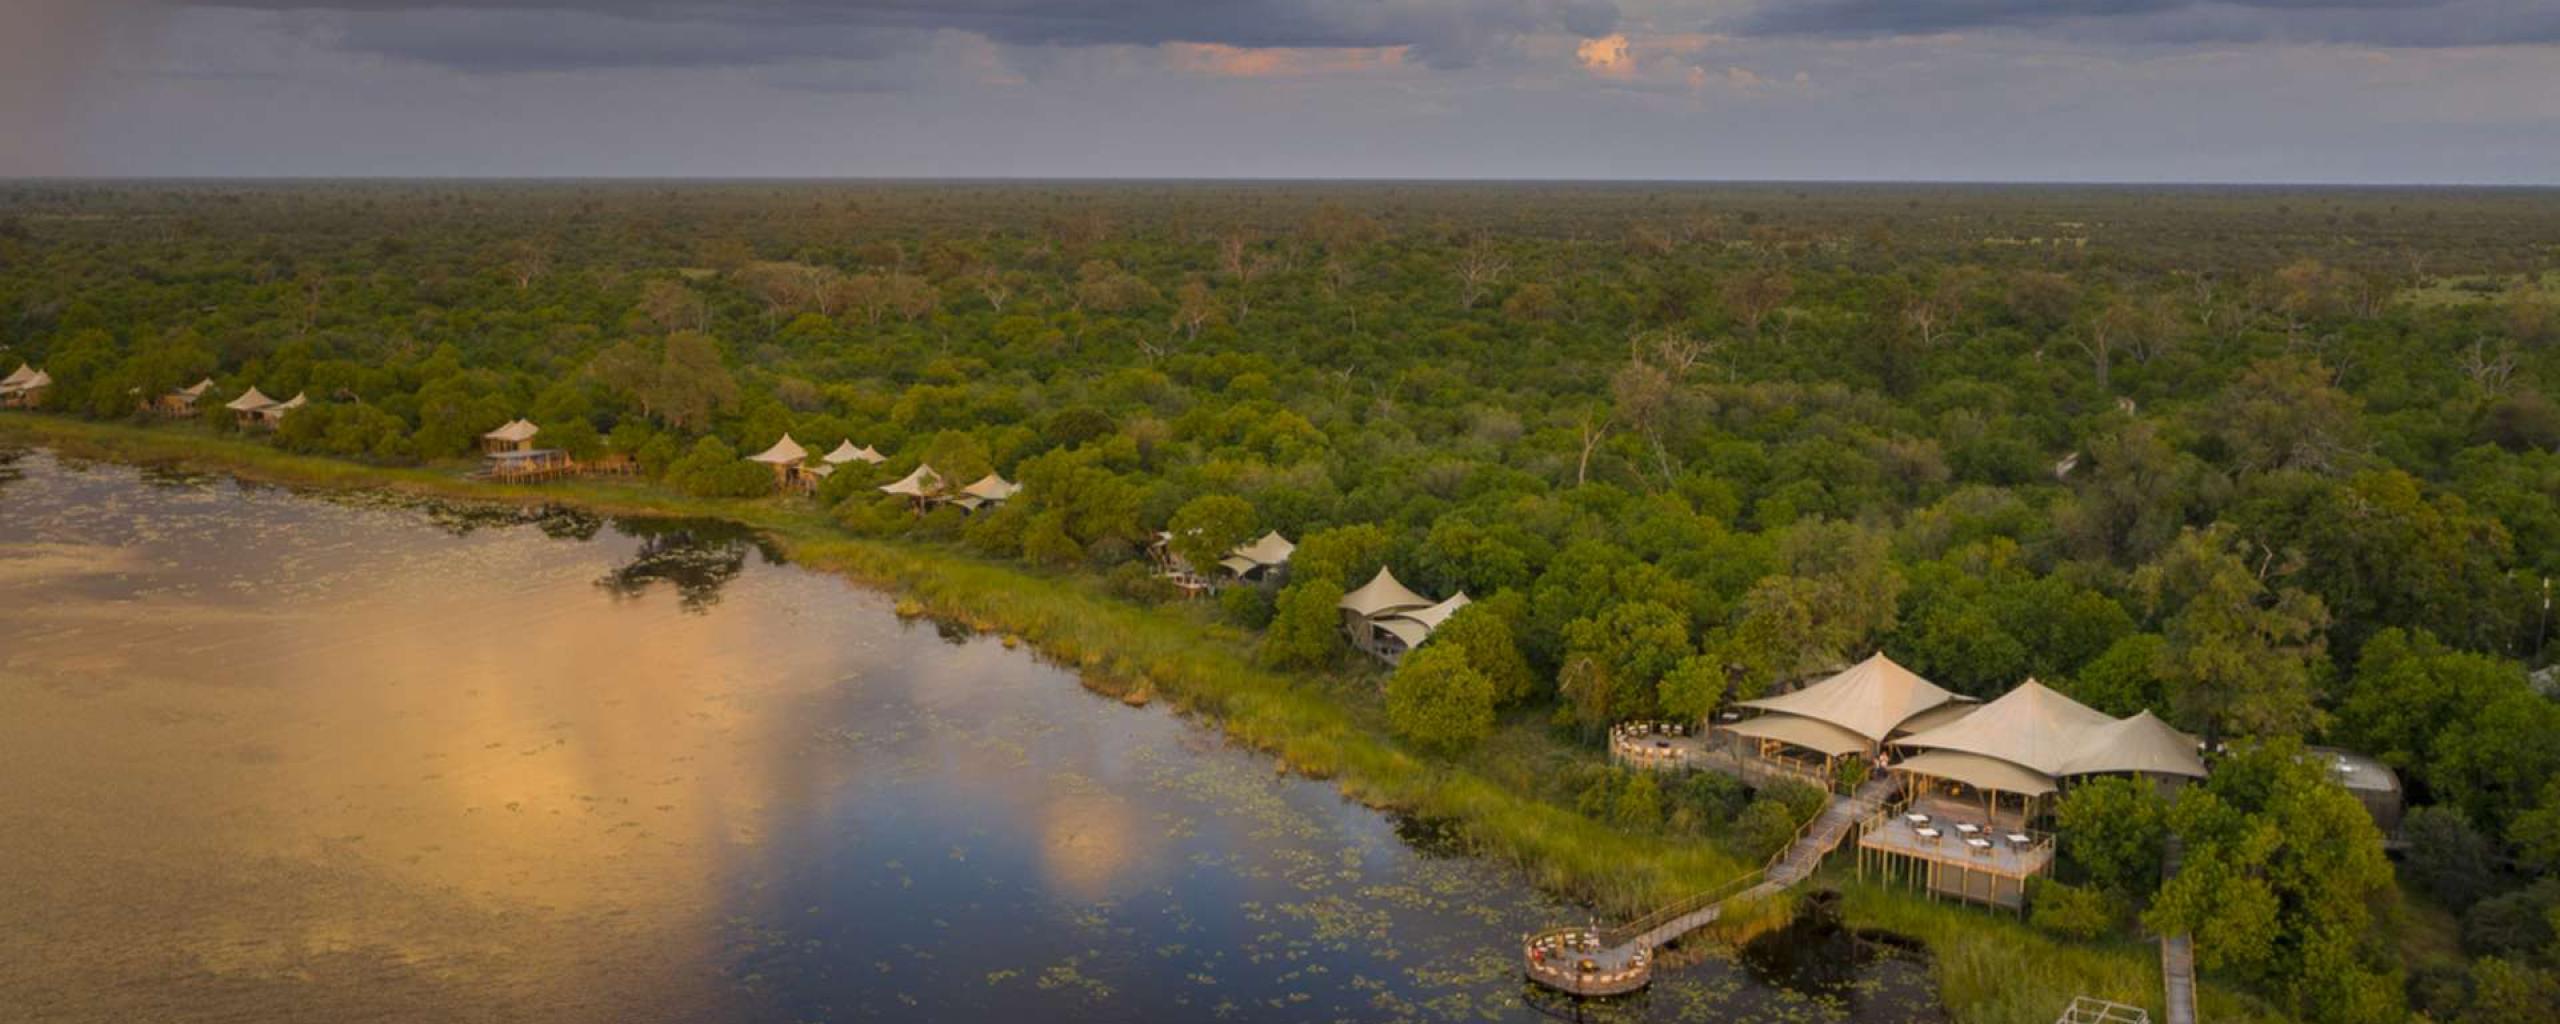 DumaTau - Okavango Delta